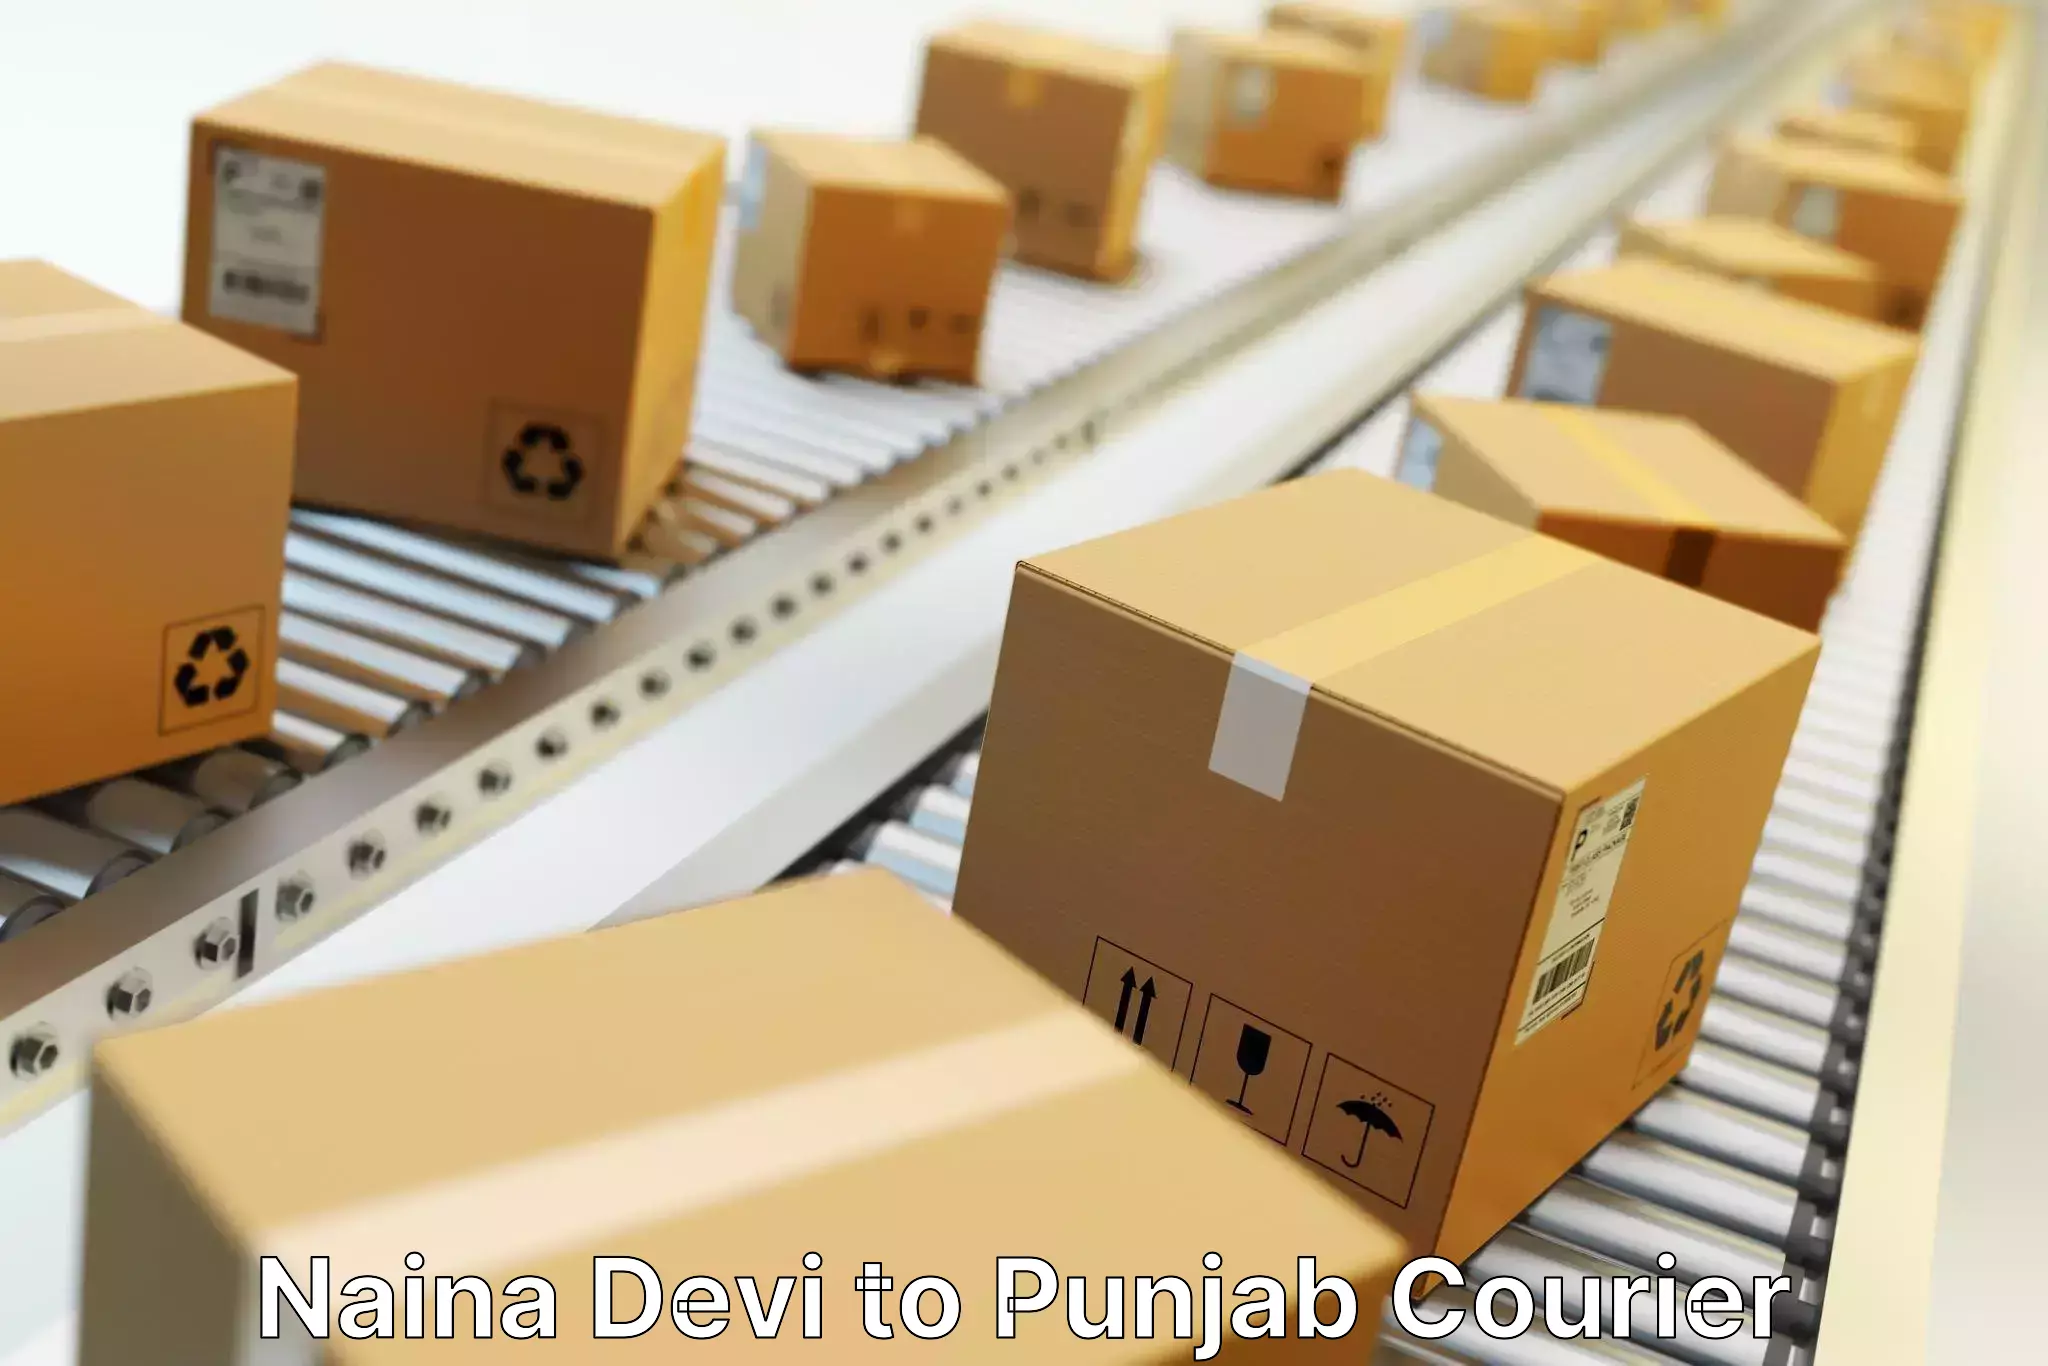 Holiday shipping services Naina Devi to Punjab